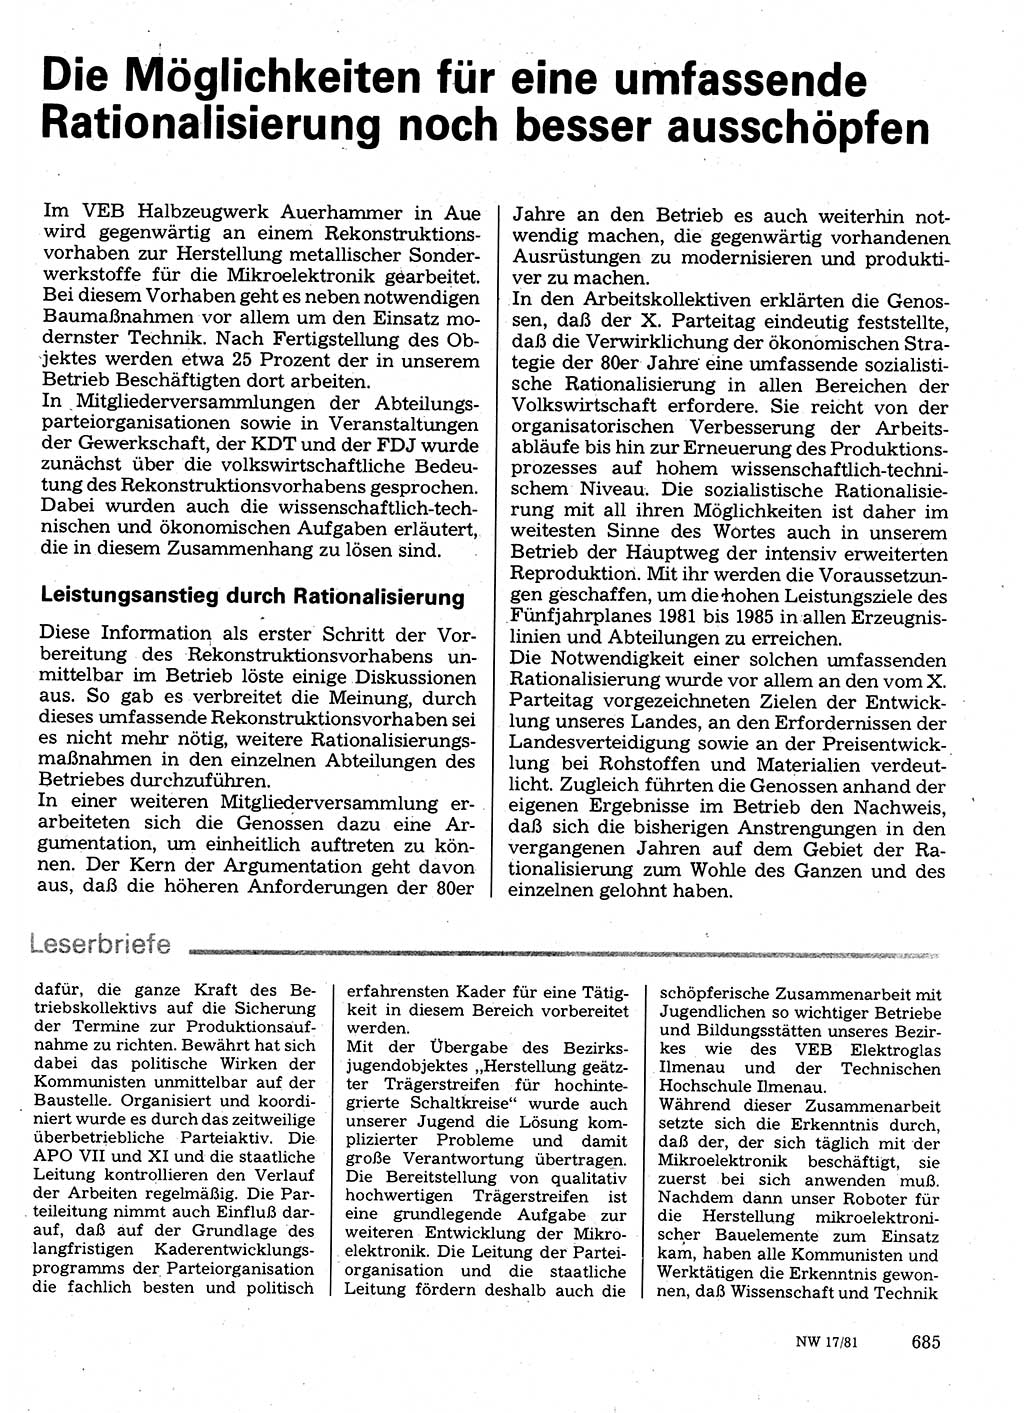 Neuer Weg (NW), Organ des Zentralkomitees (ZK) der SED (Sozialistische Einheitspartei Deutschlands) für Fragen des Parteilebens, 36. Jahrgang [Deutsche Demokratische Republik (DDR)] 1981, Seite 685 (NW ZK SED DDR 1981, S. 685)